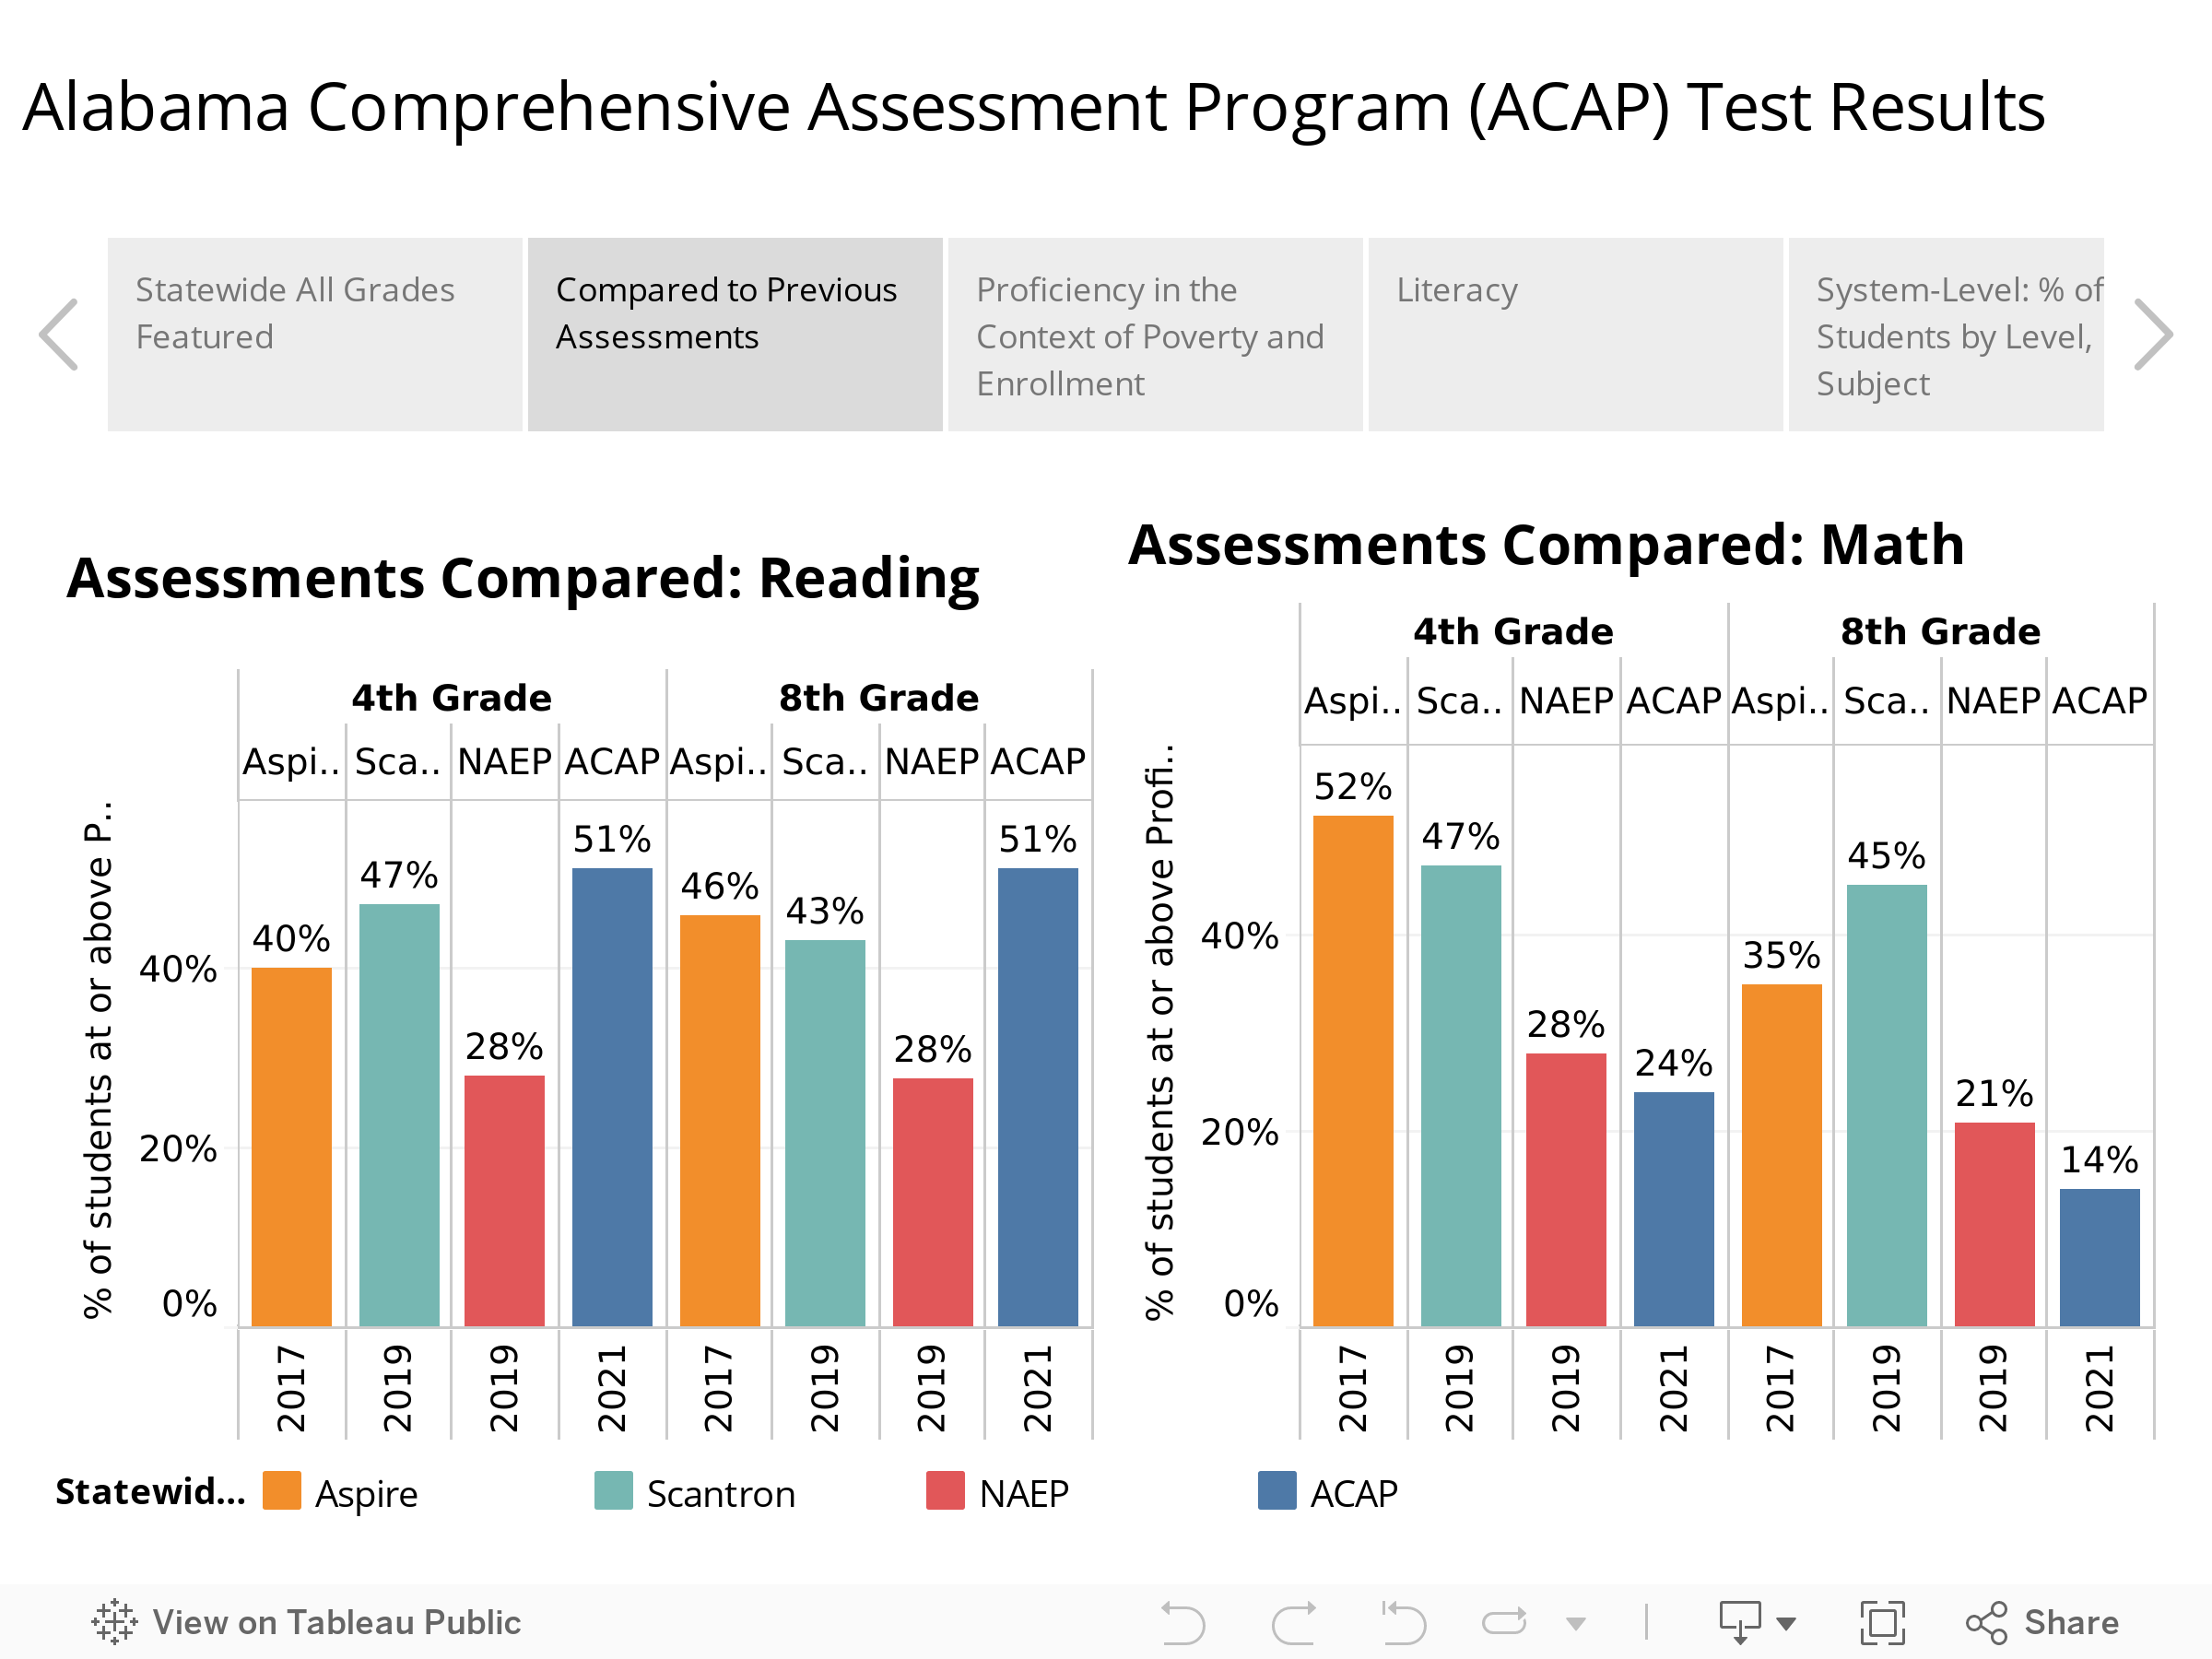 Alabama Comprehensive Assessment Program (ACAP) Test Results 